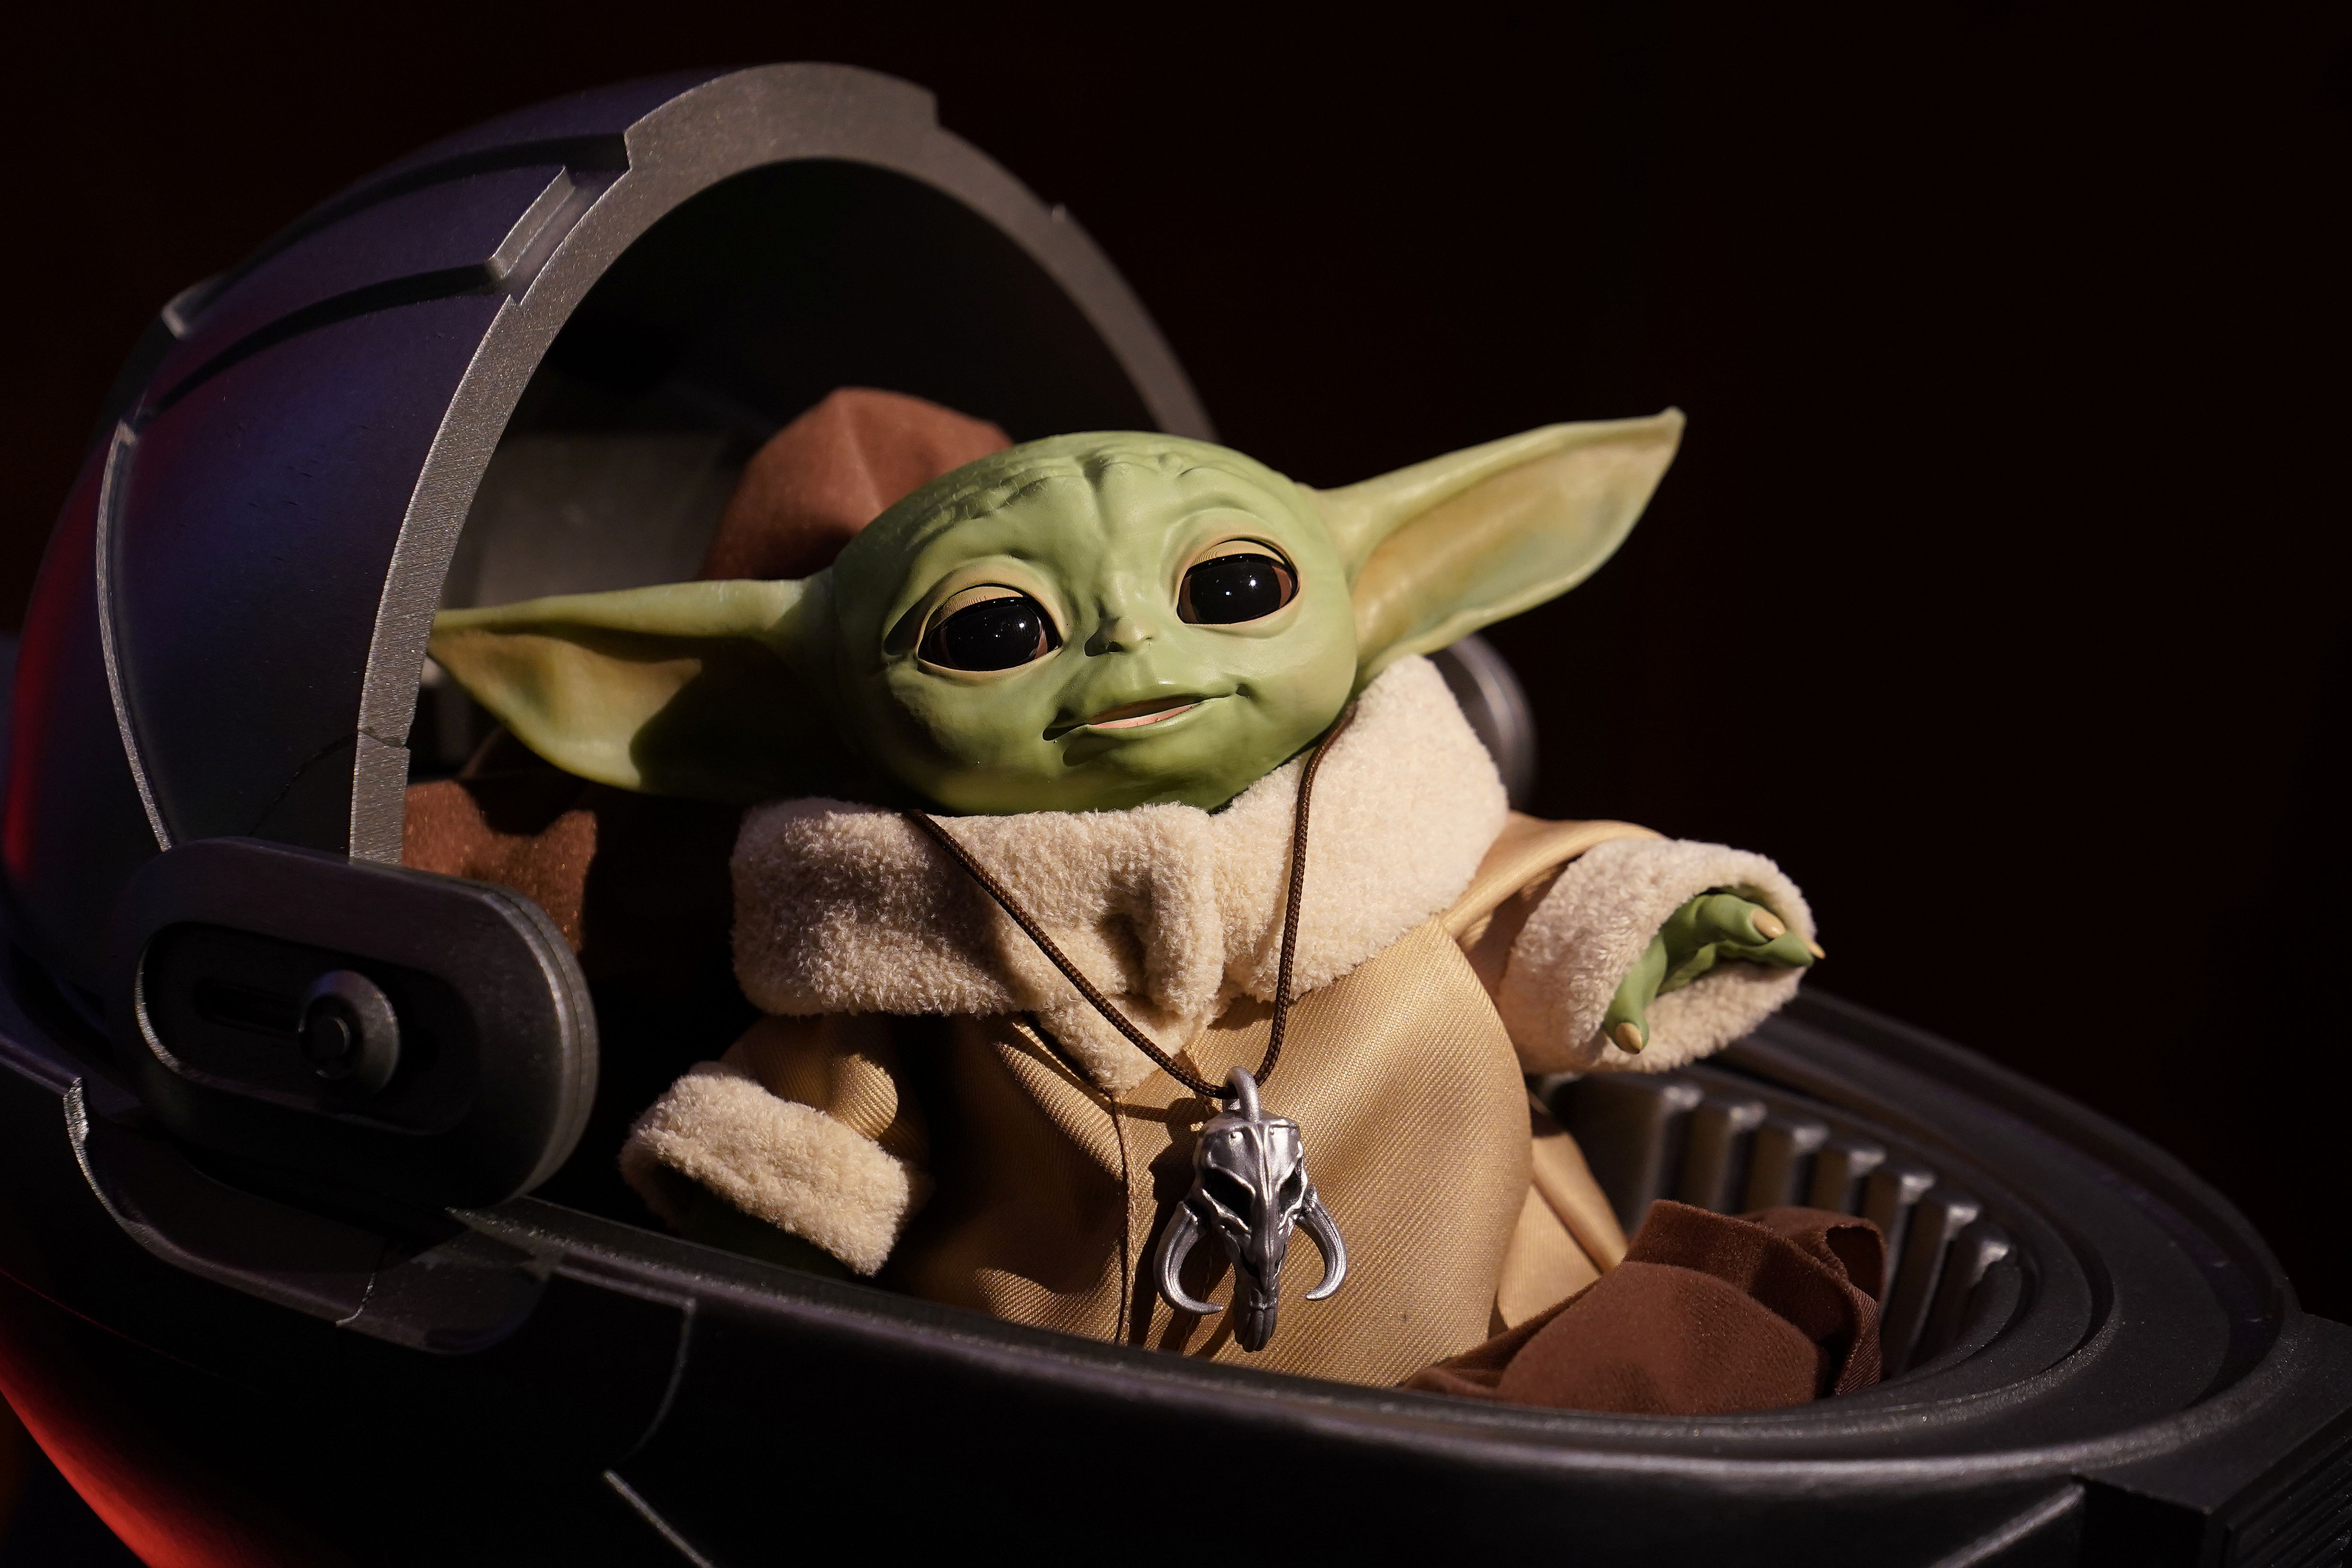 Baby Yoda se convirtió en uno de los personajes más populares de la franquicia (Foto: REUTERS/Carlo Allegri)